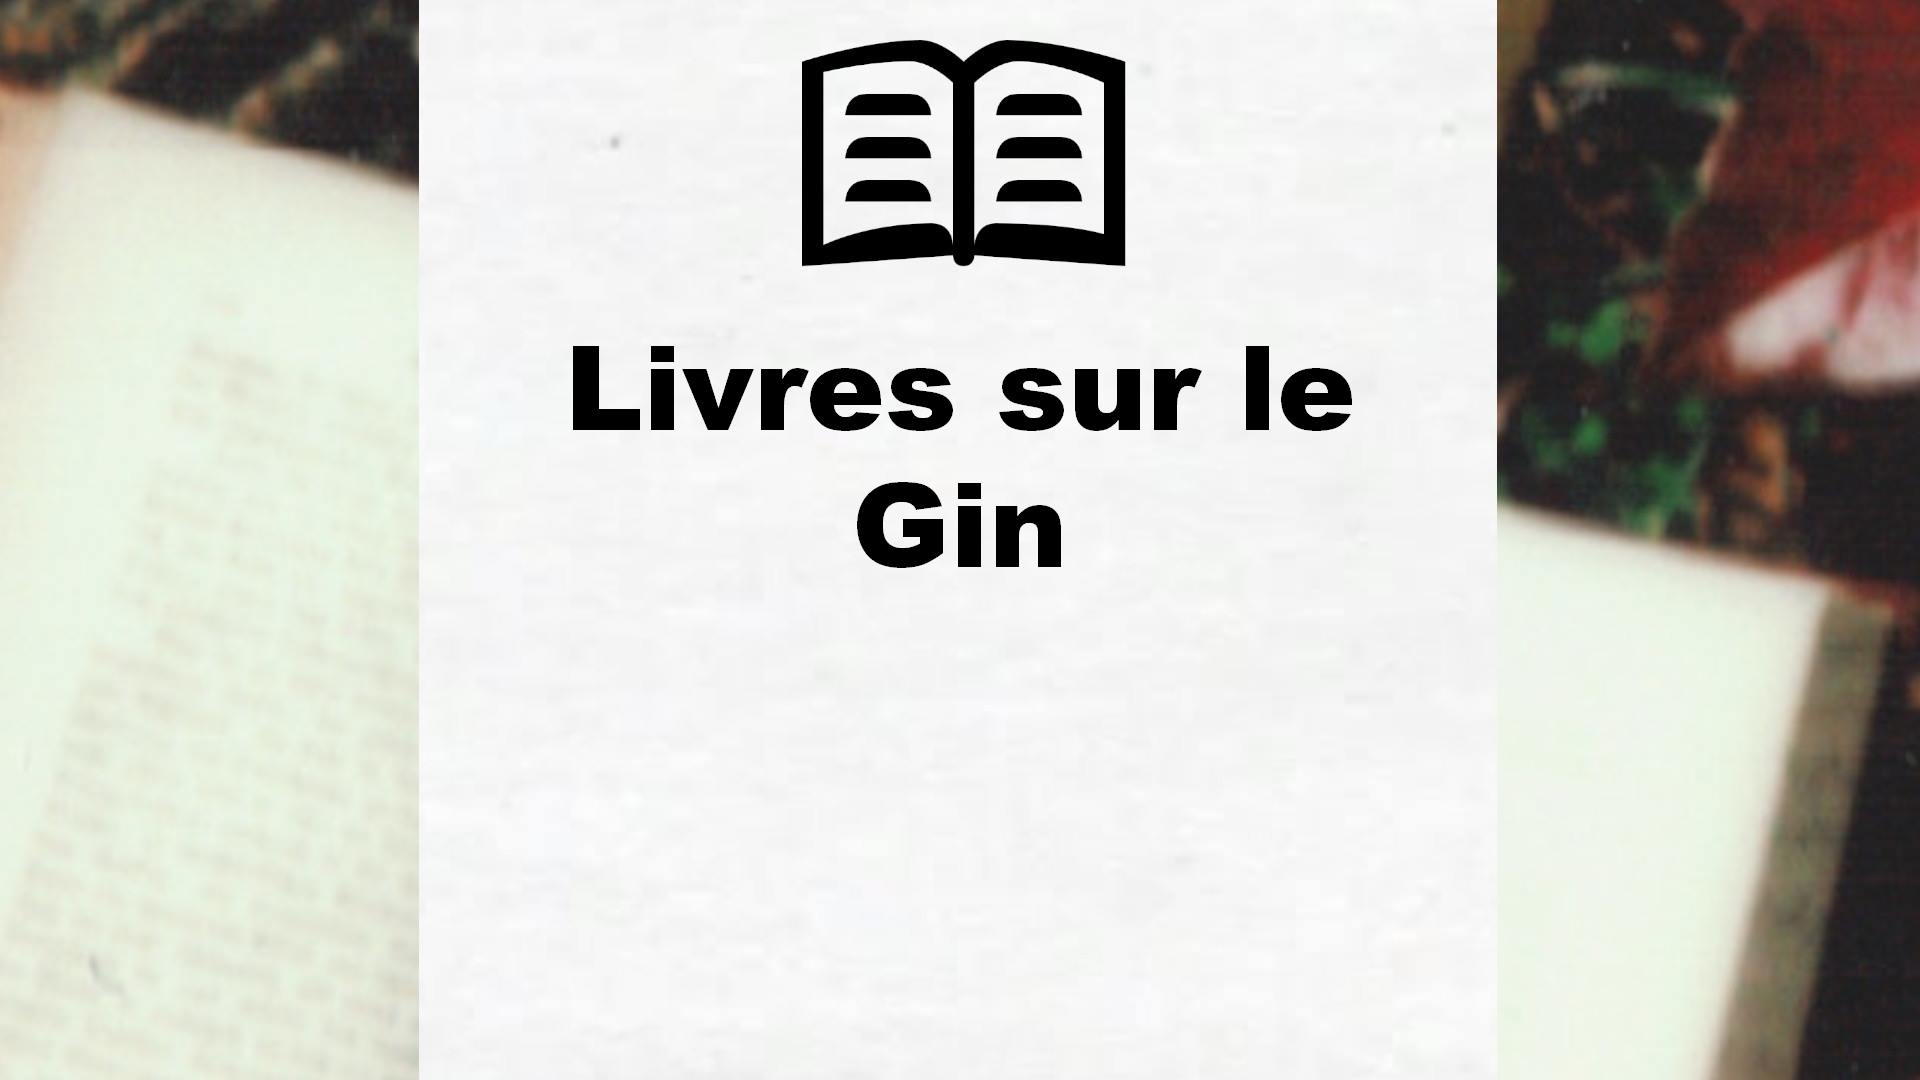 Livres sur le Gin